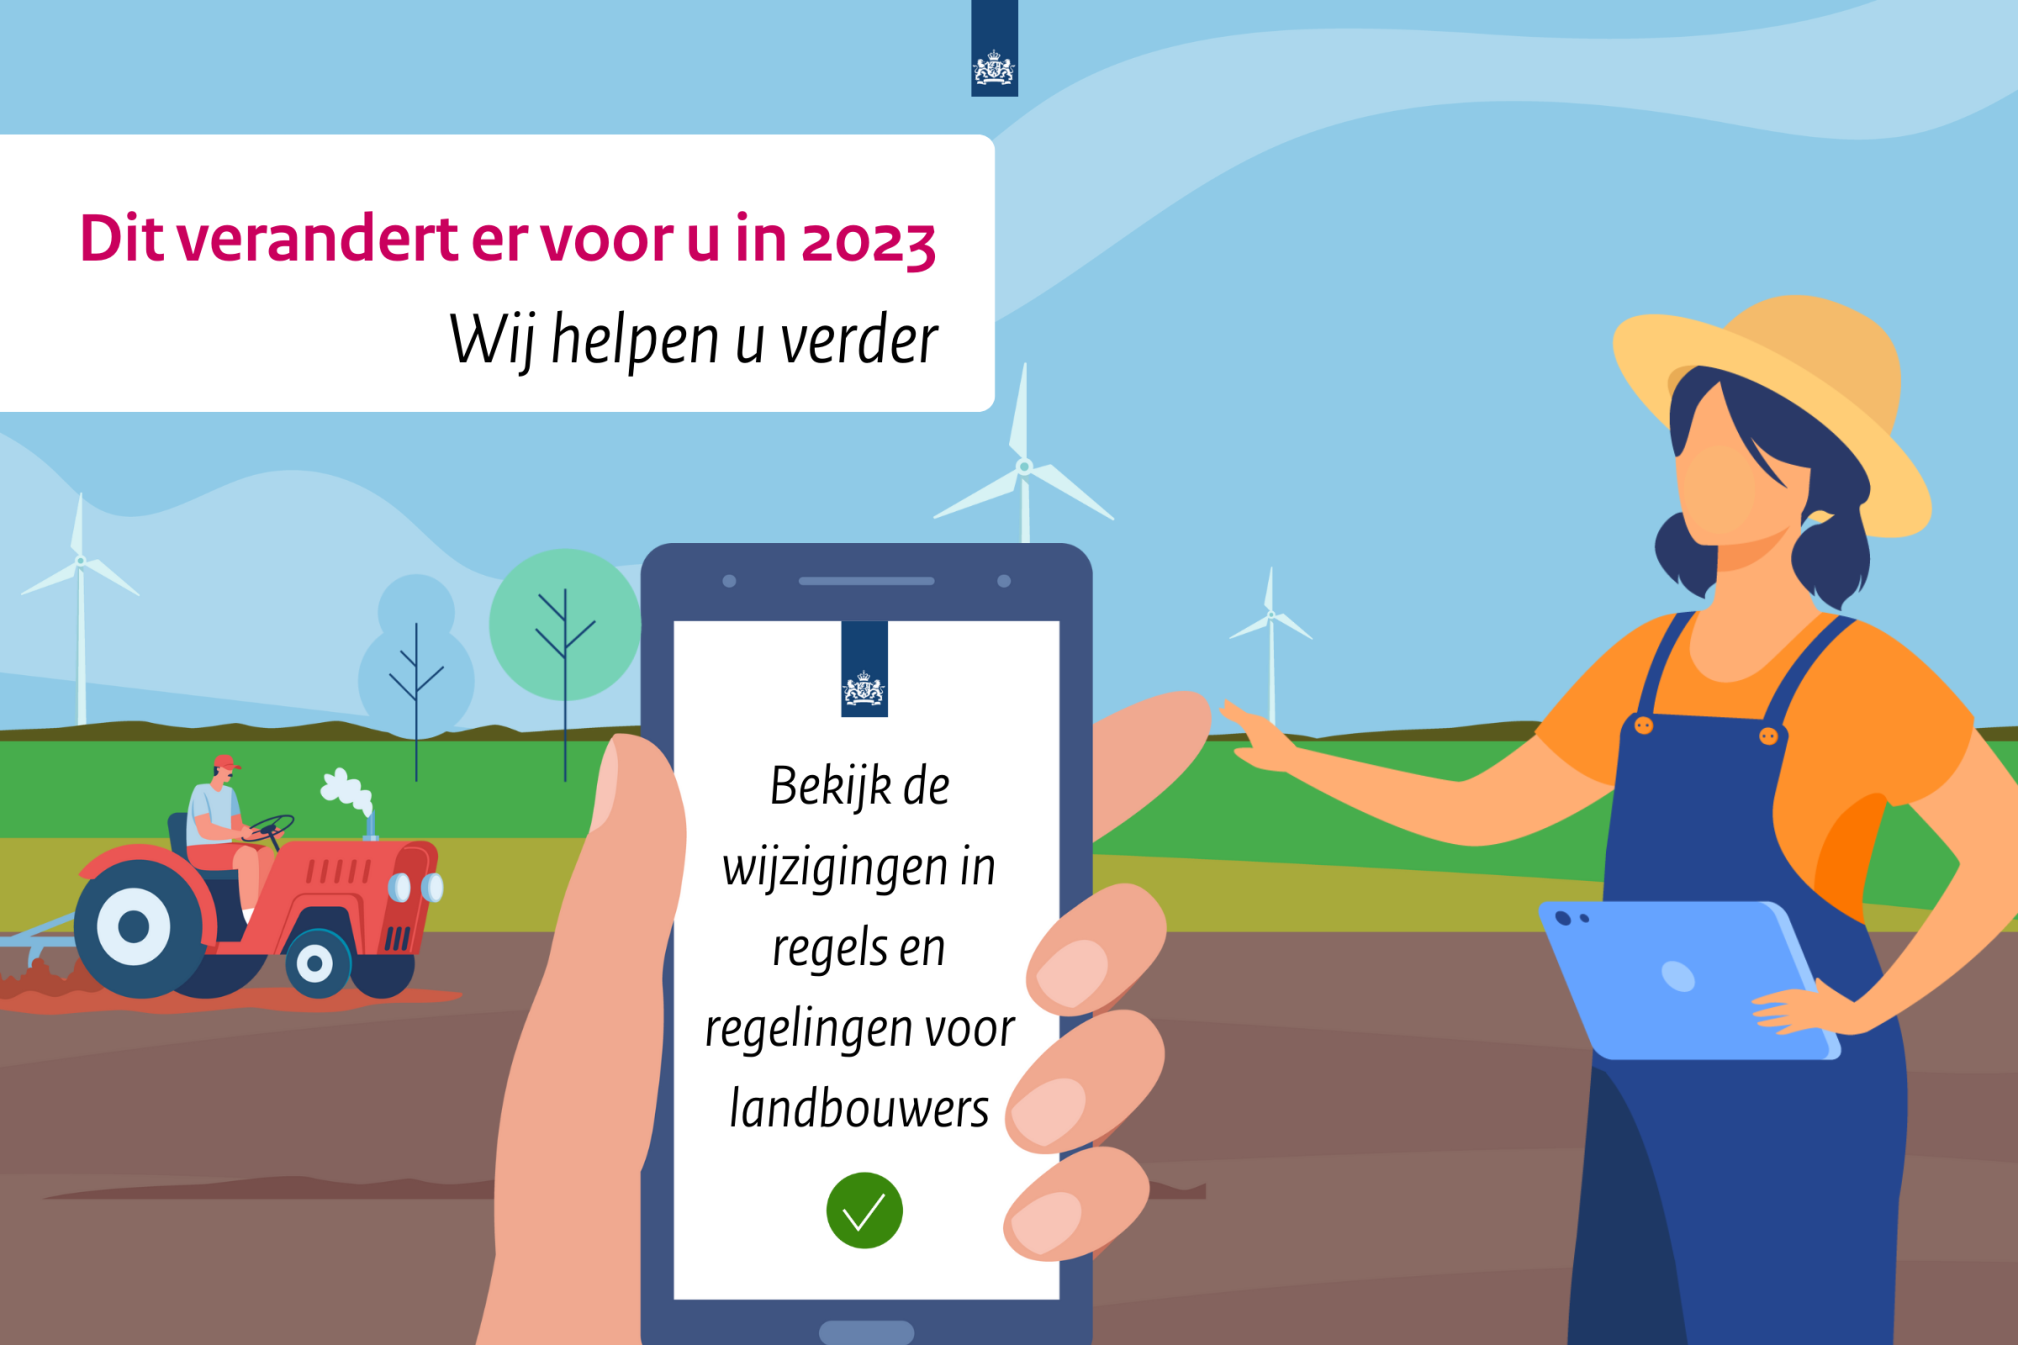 Illustratie Veranderingen 2023: boerin met tablet, boer met tractor op het land, in het midden smartphone met tekst 